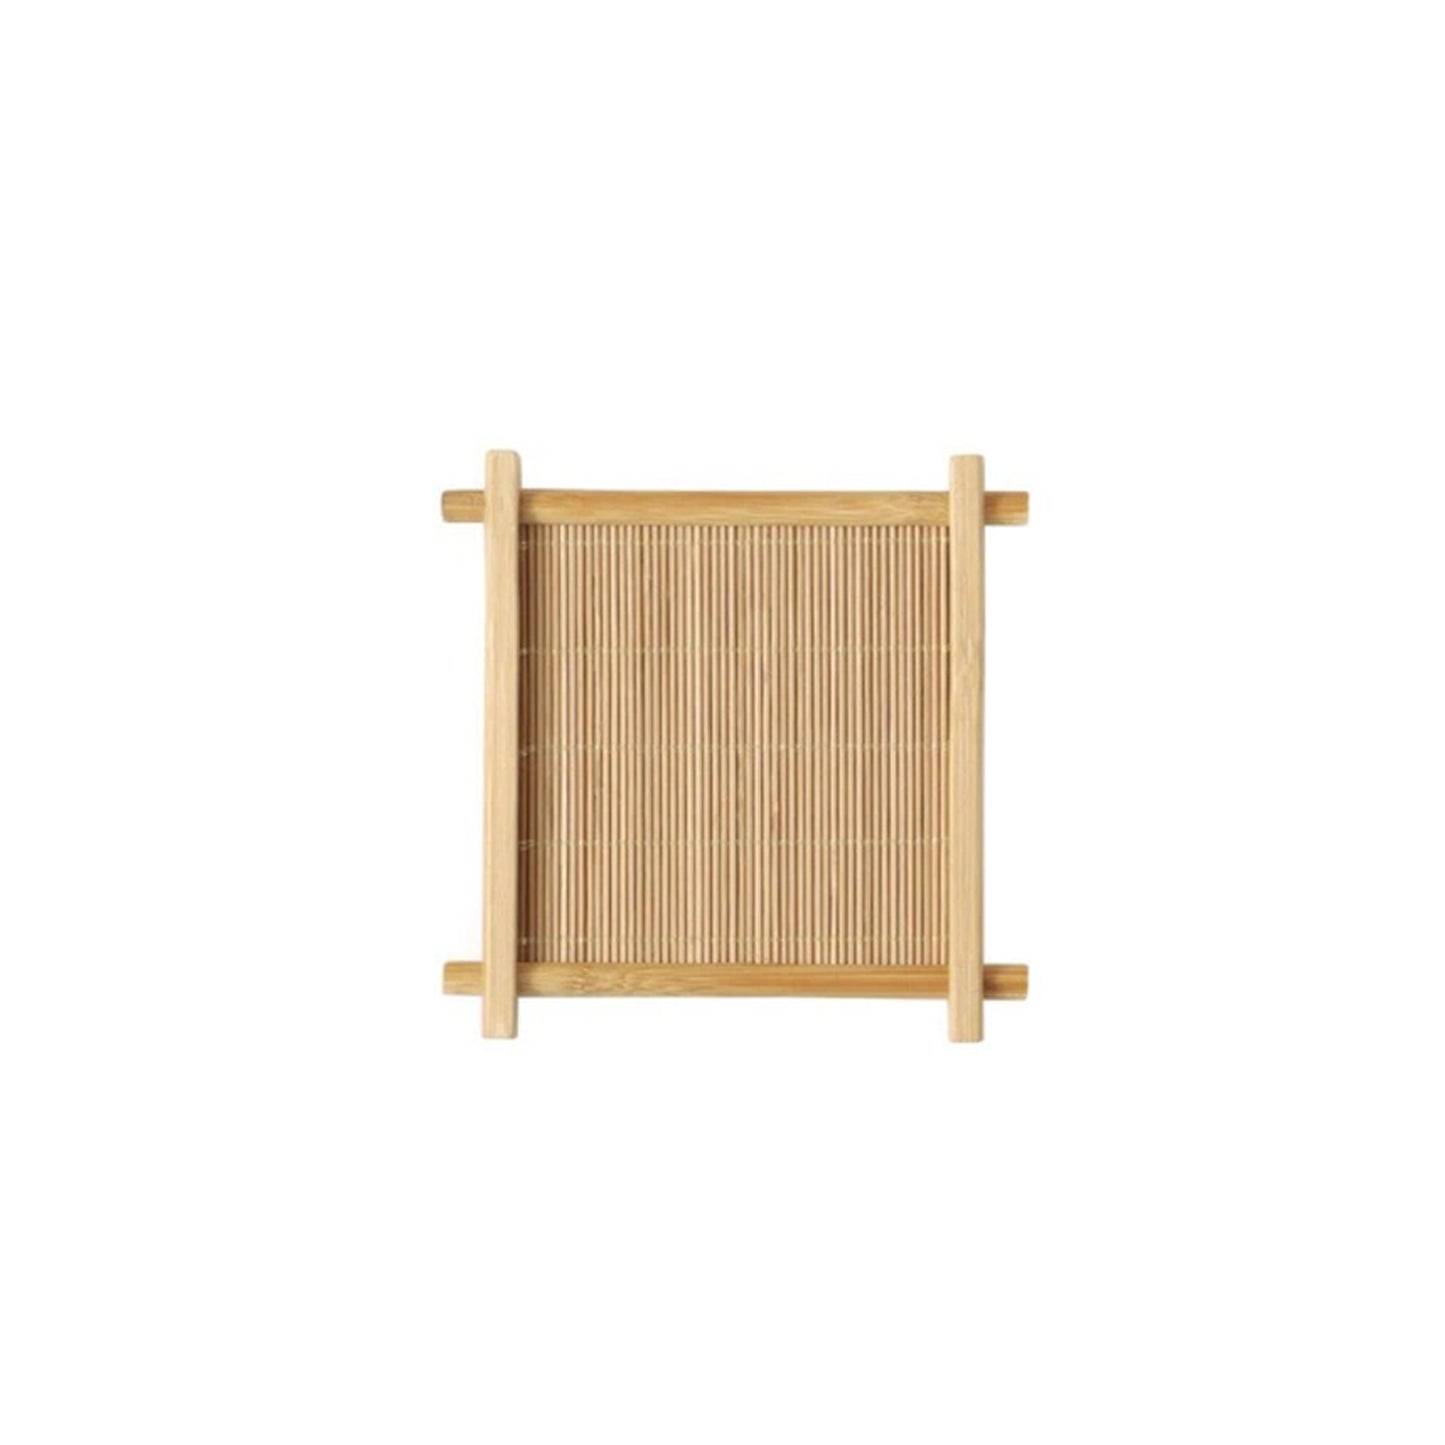 Japanese Retro Bamboo Tray Coaster